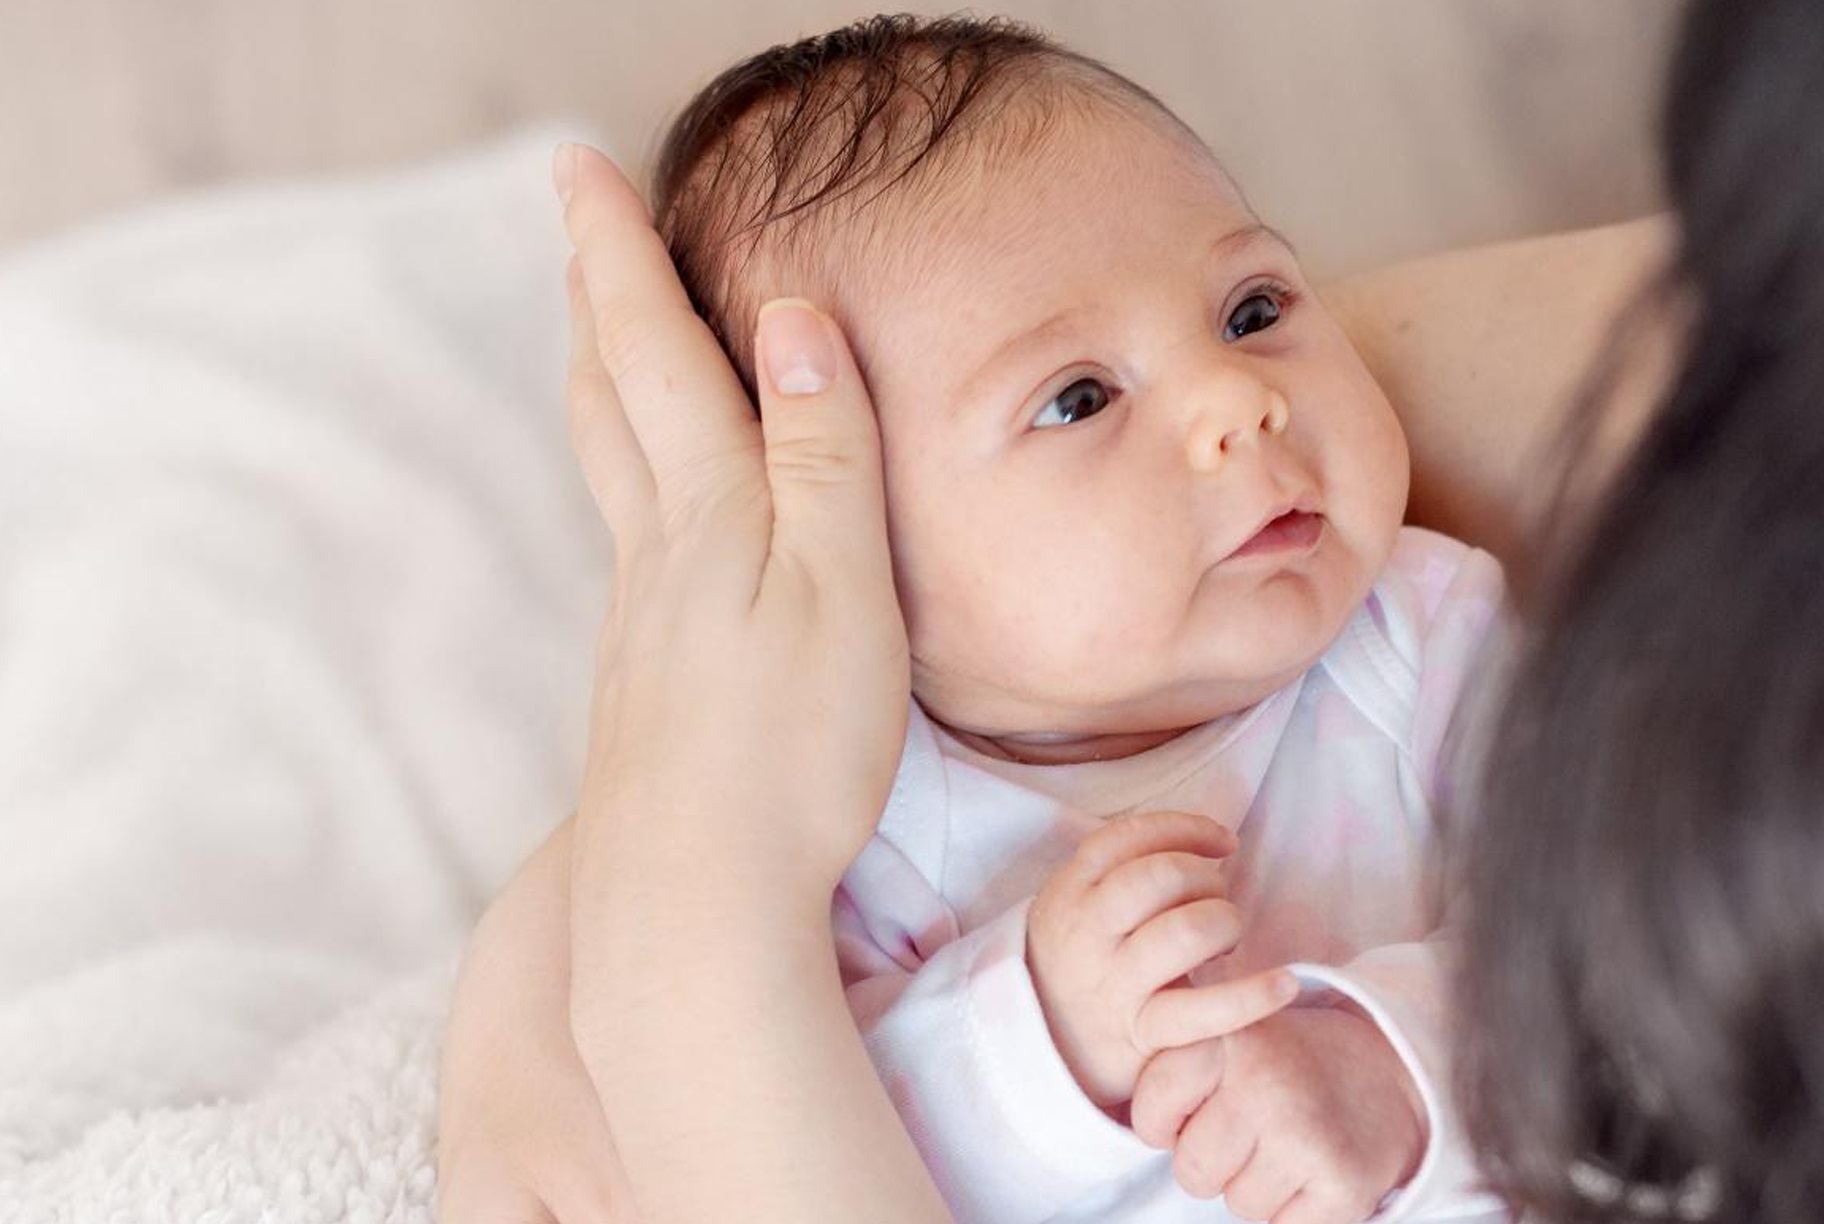 شهقة الرضيع أثناء النوم: أسبابها وعلاجها